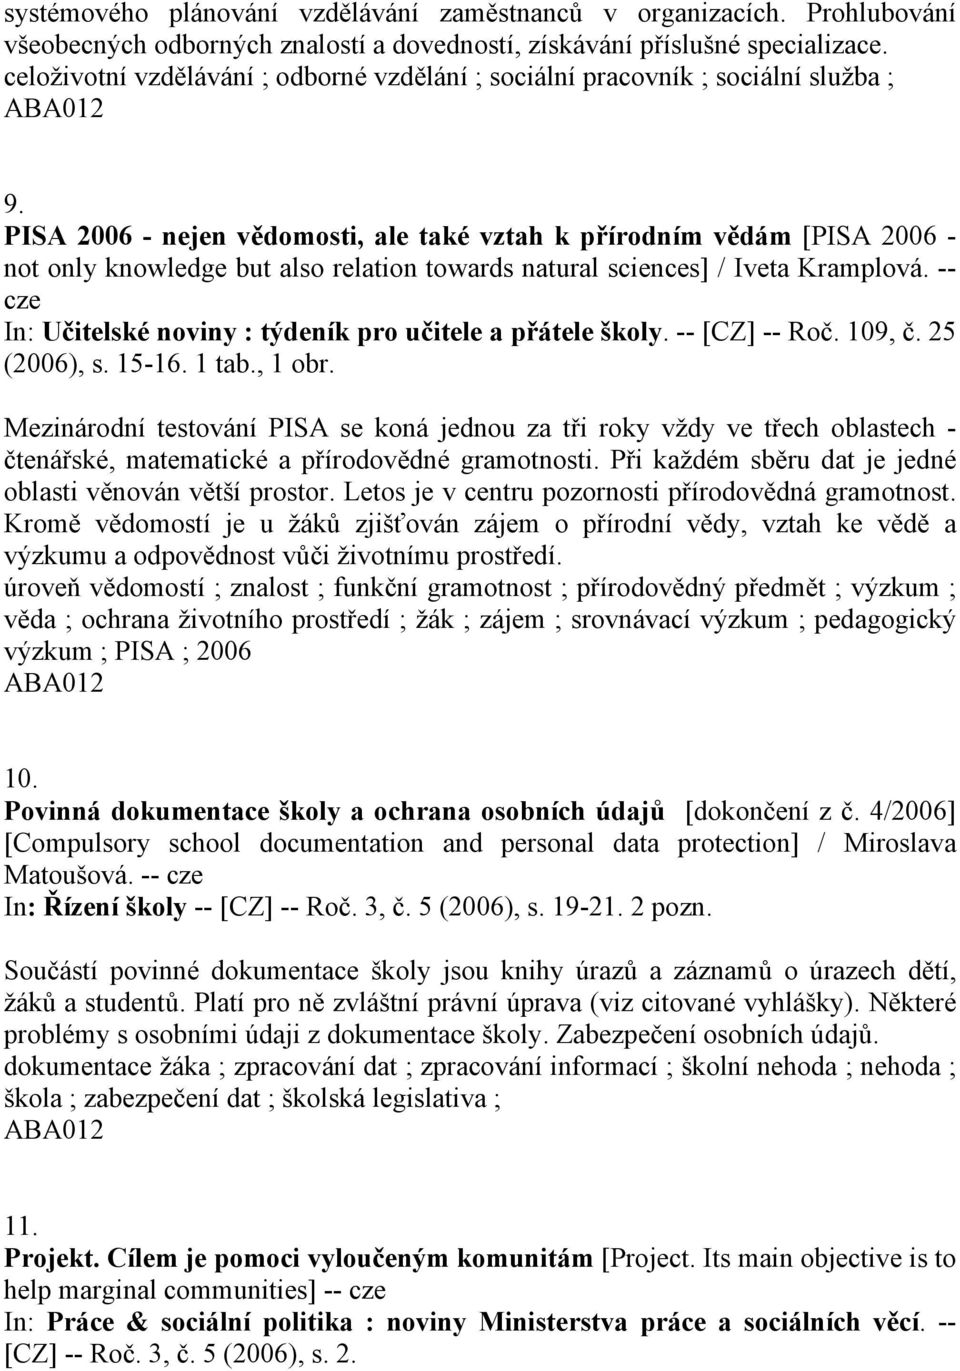 PISA 2006 - nejen vědomosti, ale také vztah k přírodním vědám [PISA 2006 - not only knowledge but also relation towards natural sciences] / Iveta Kramplová.